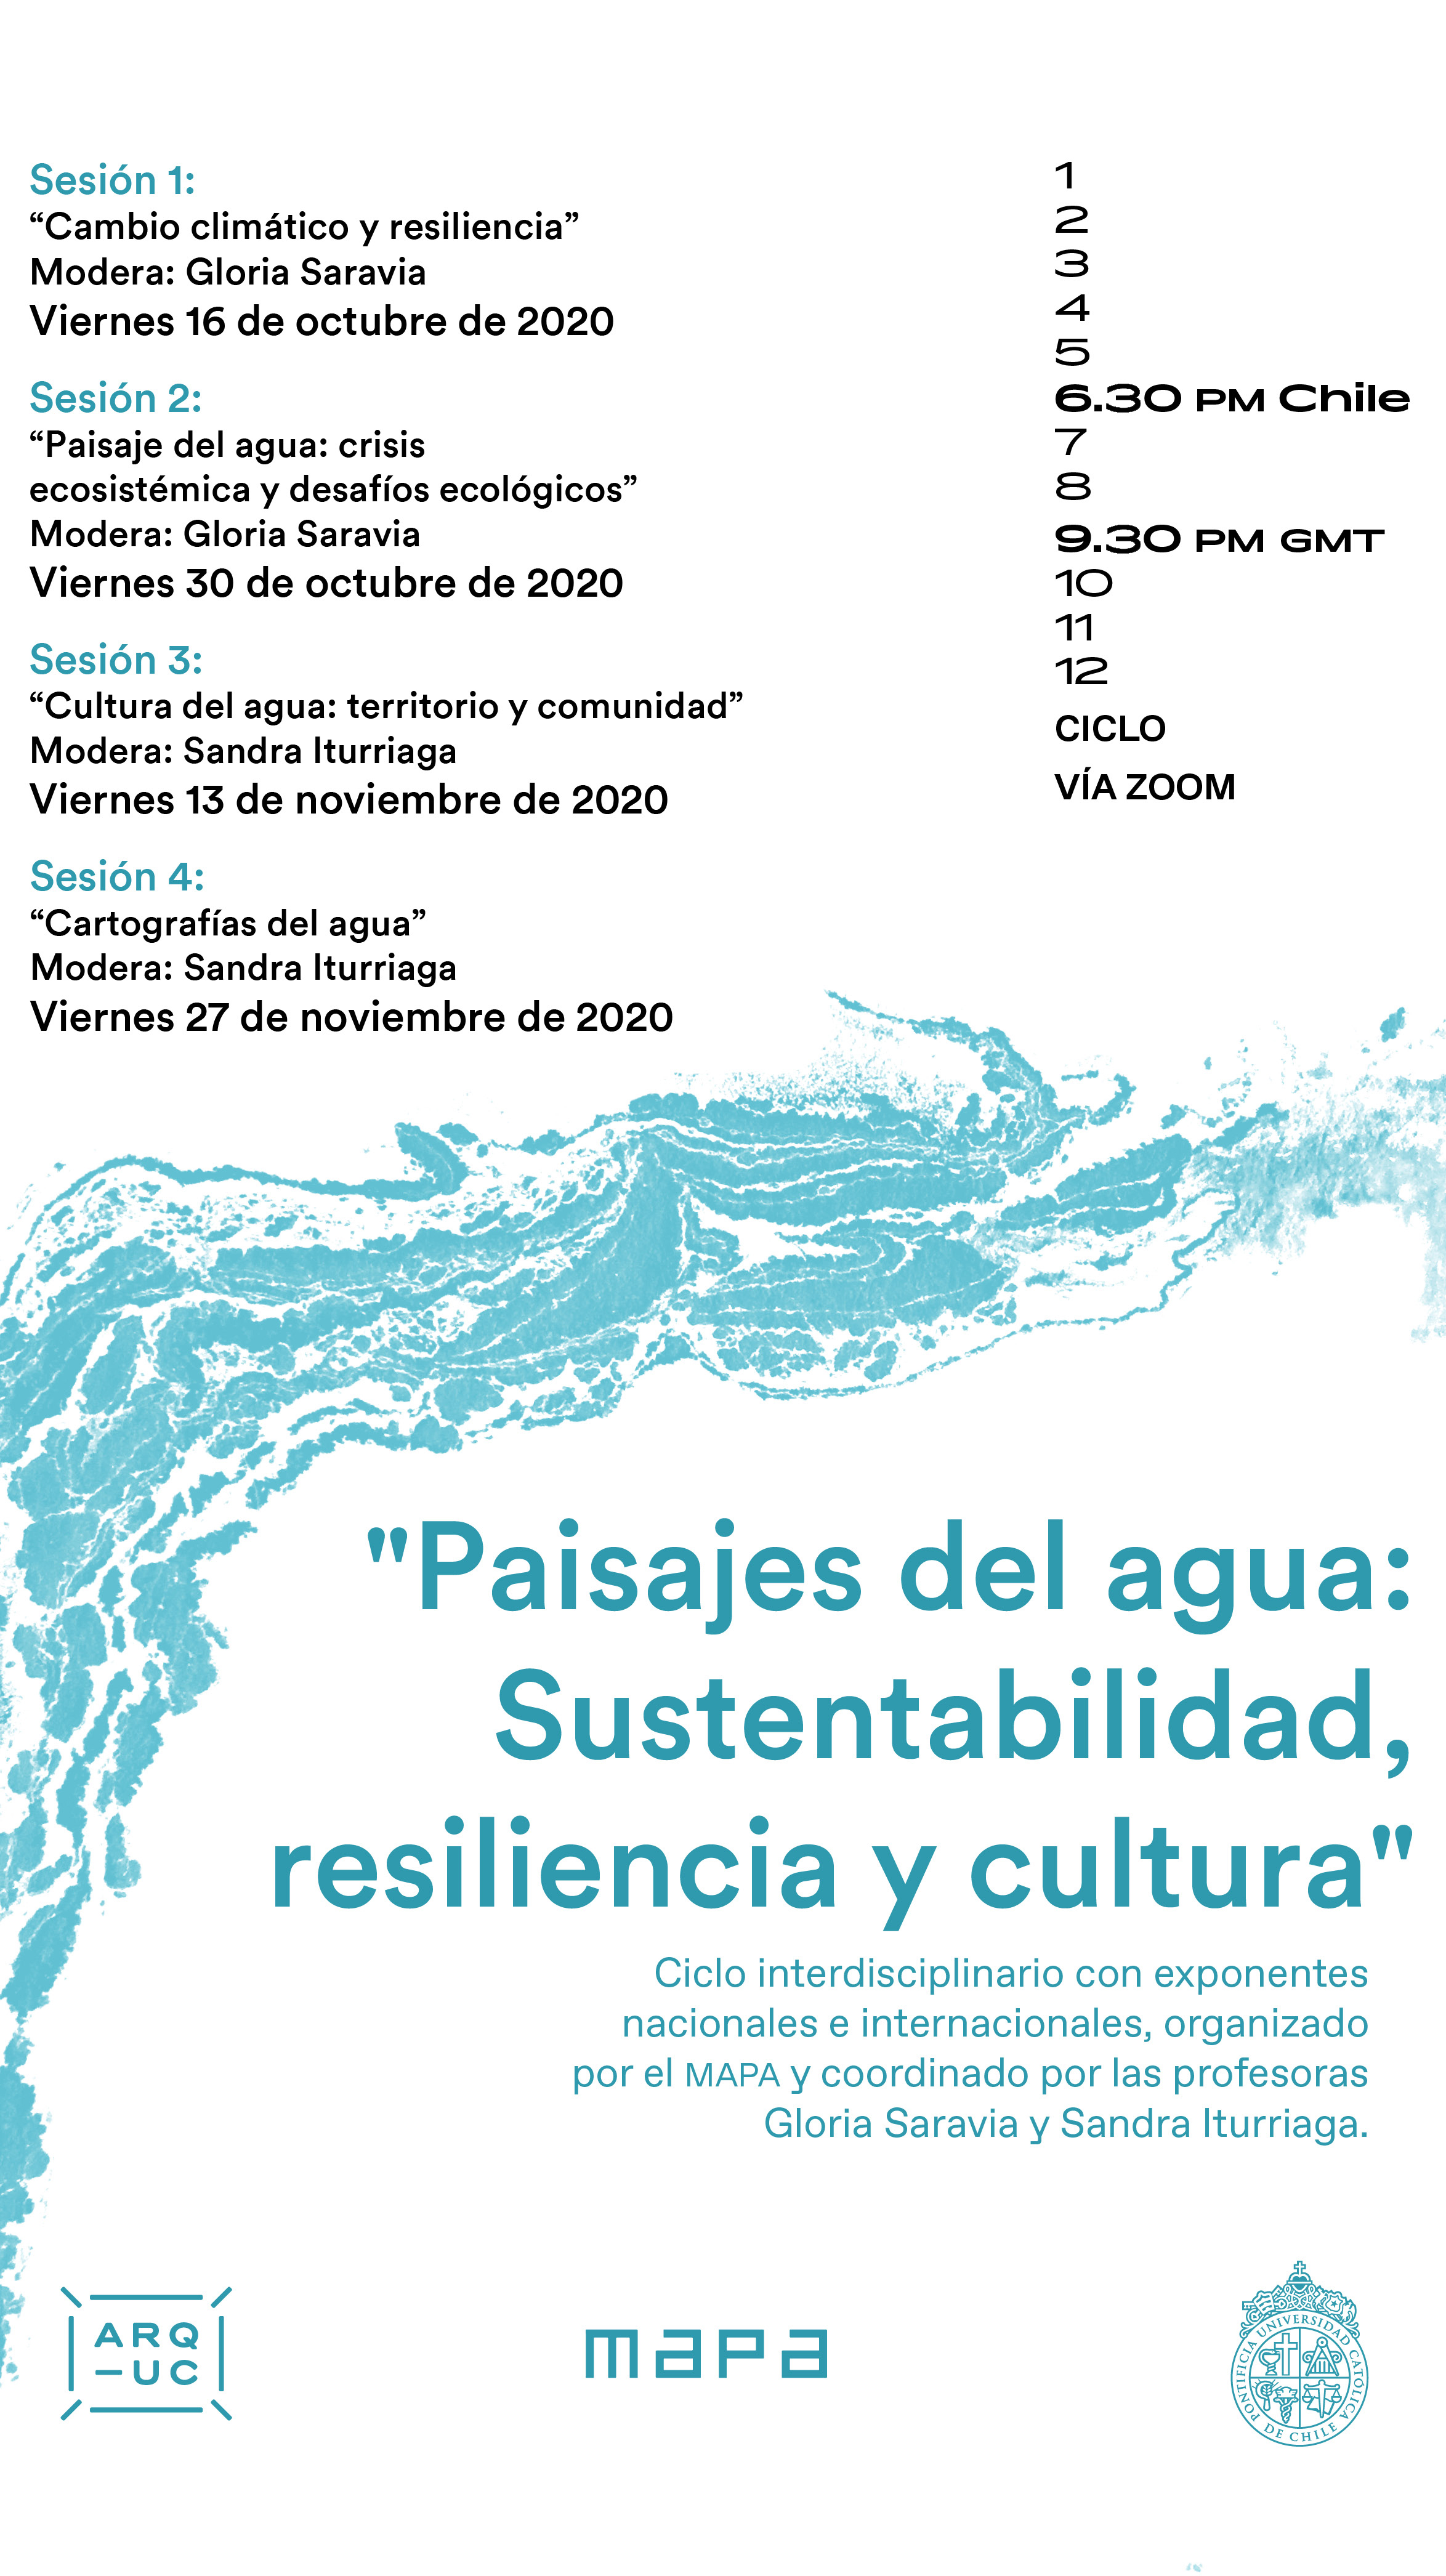 20201009_AFICHE_Paisajes_del_agua__Sustentabilidad_resiliencia_y_cultura_1.jpg